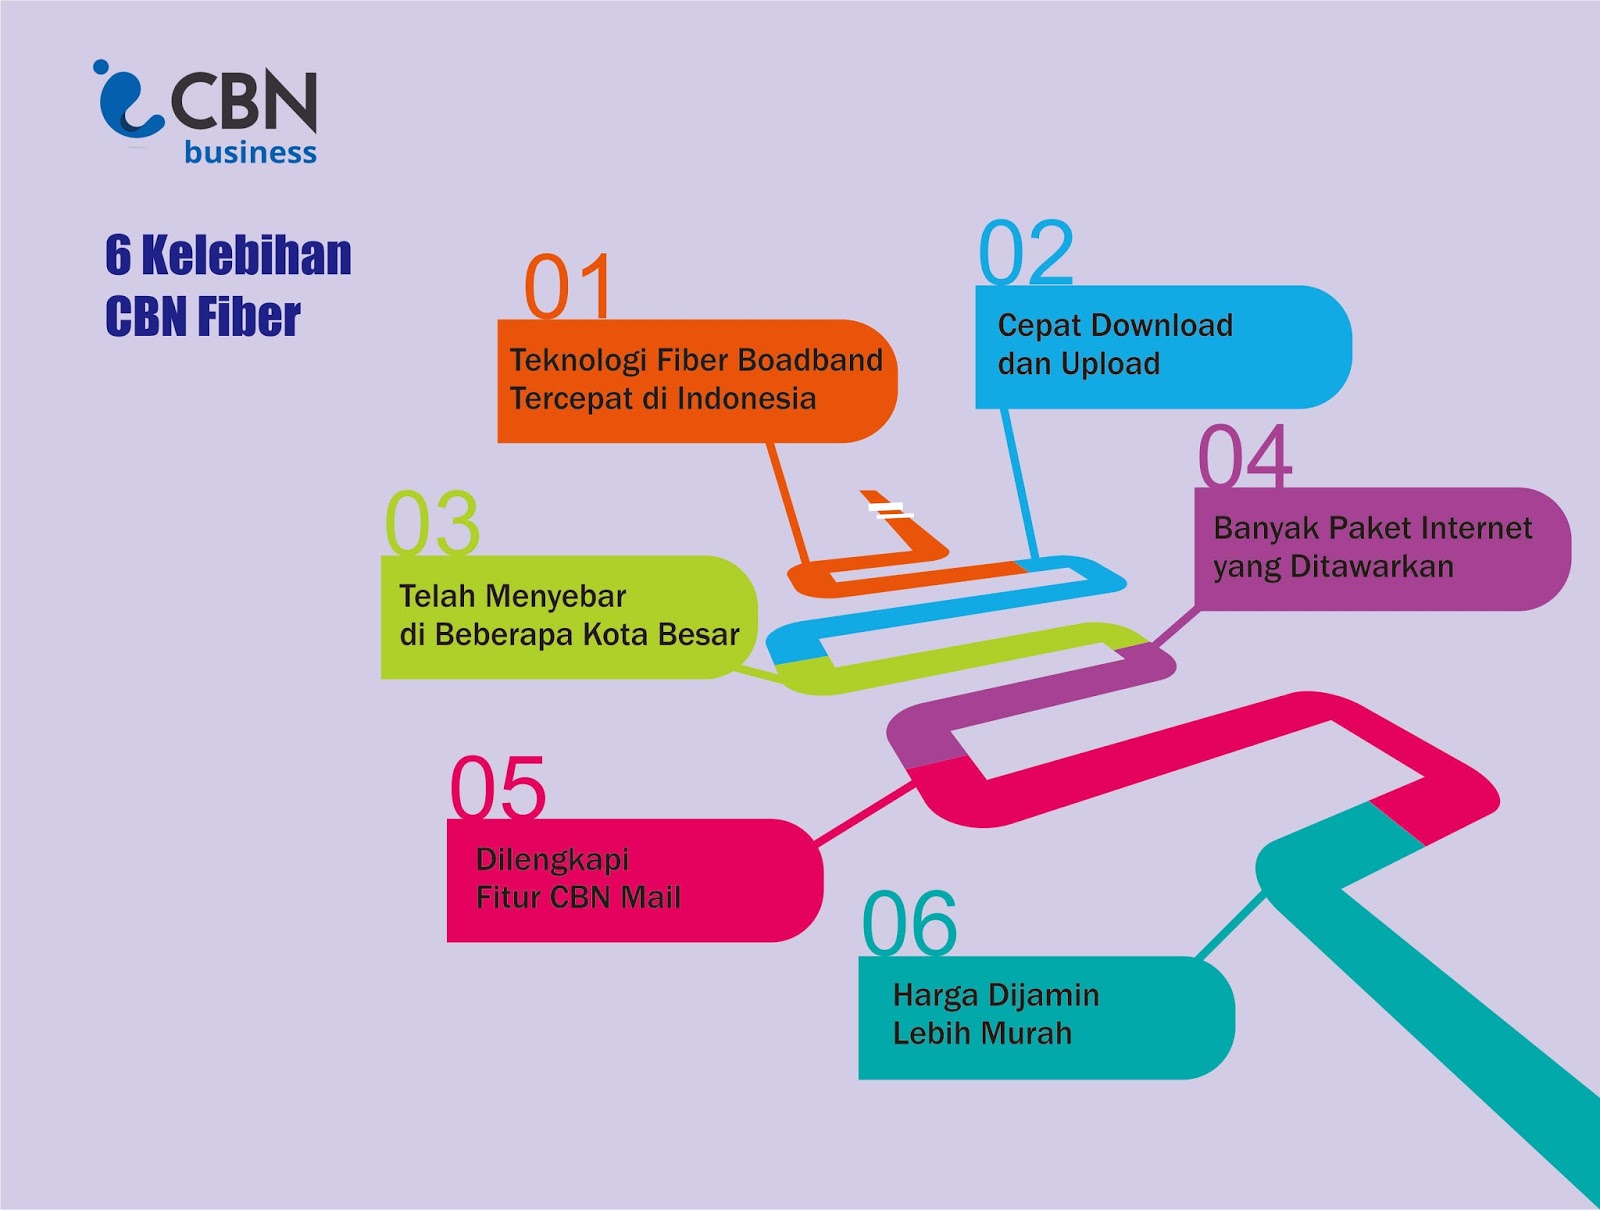 Enam 6 Kelebihan CBN Fiber by Ali